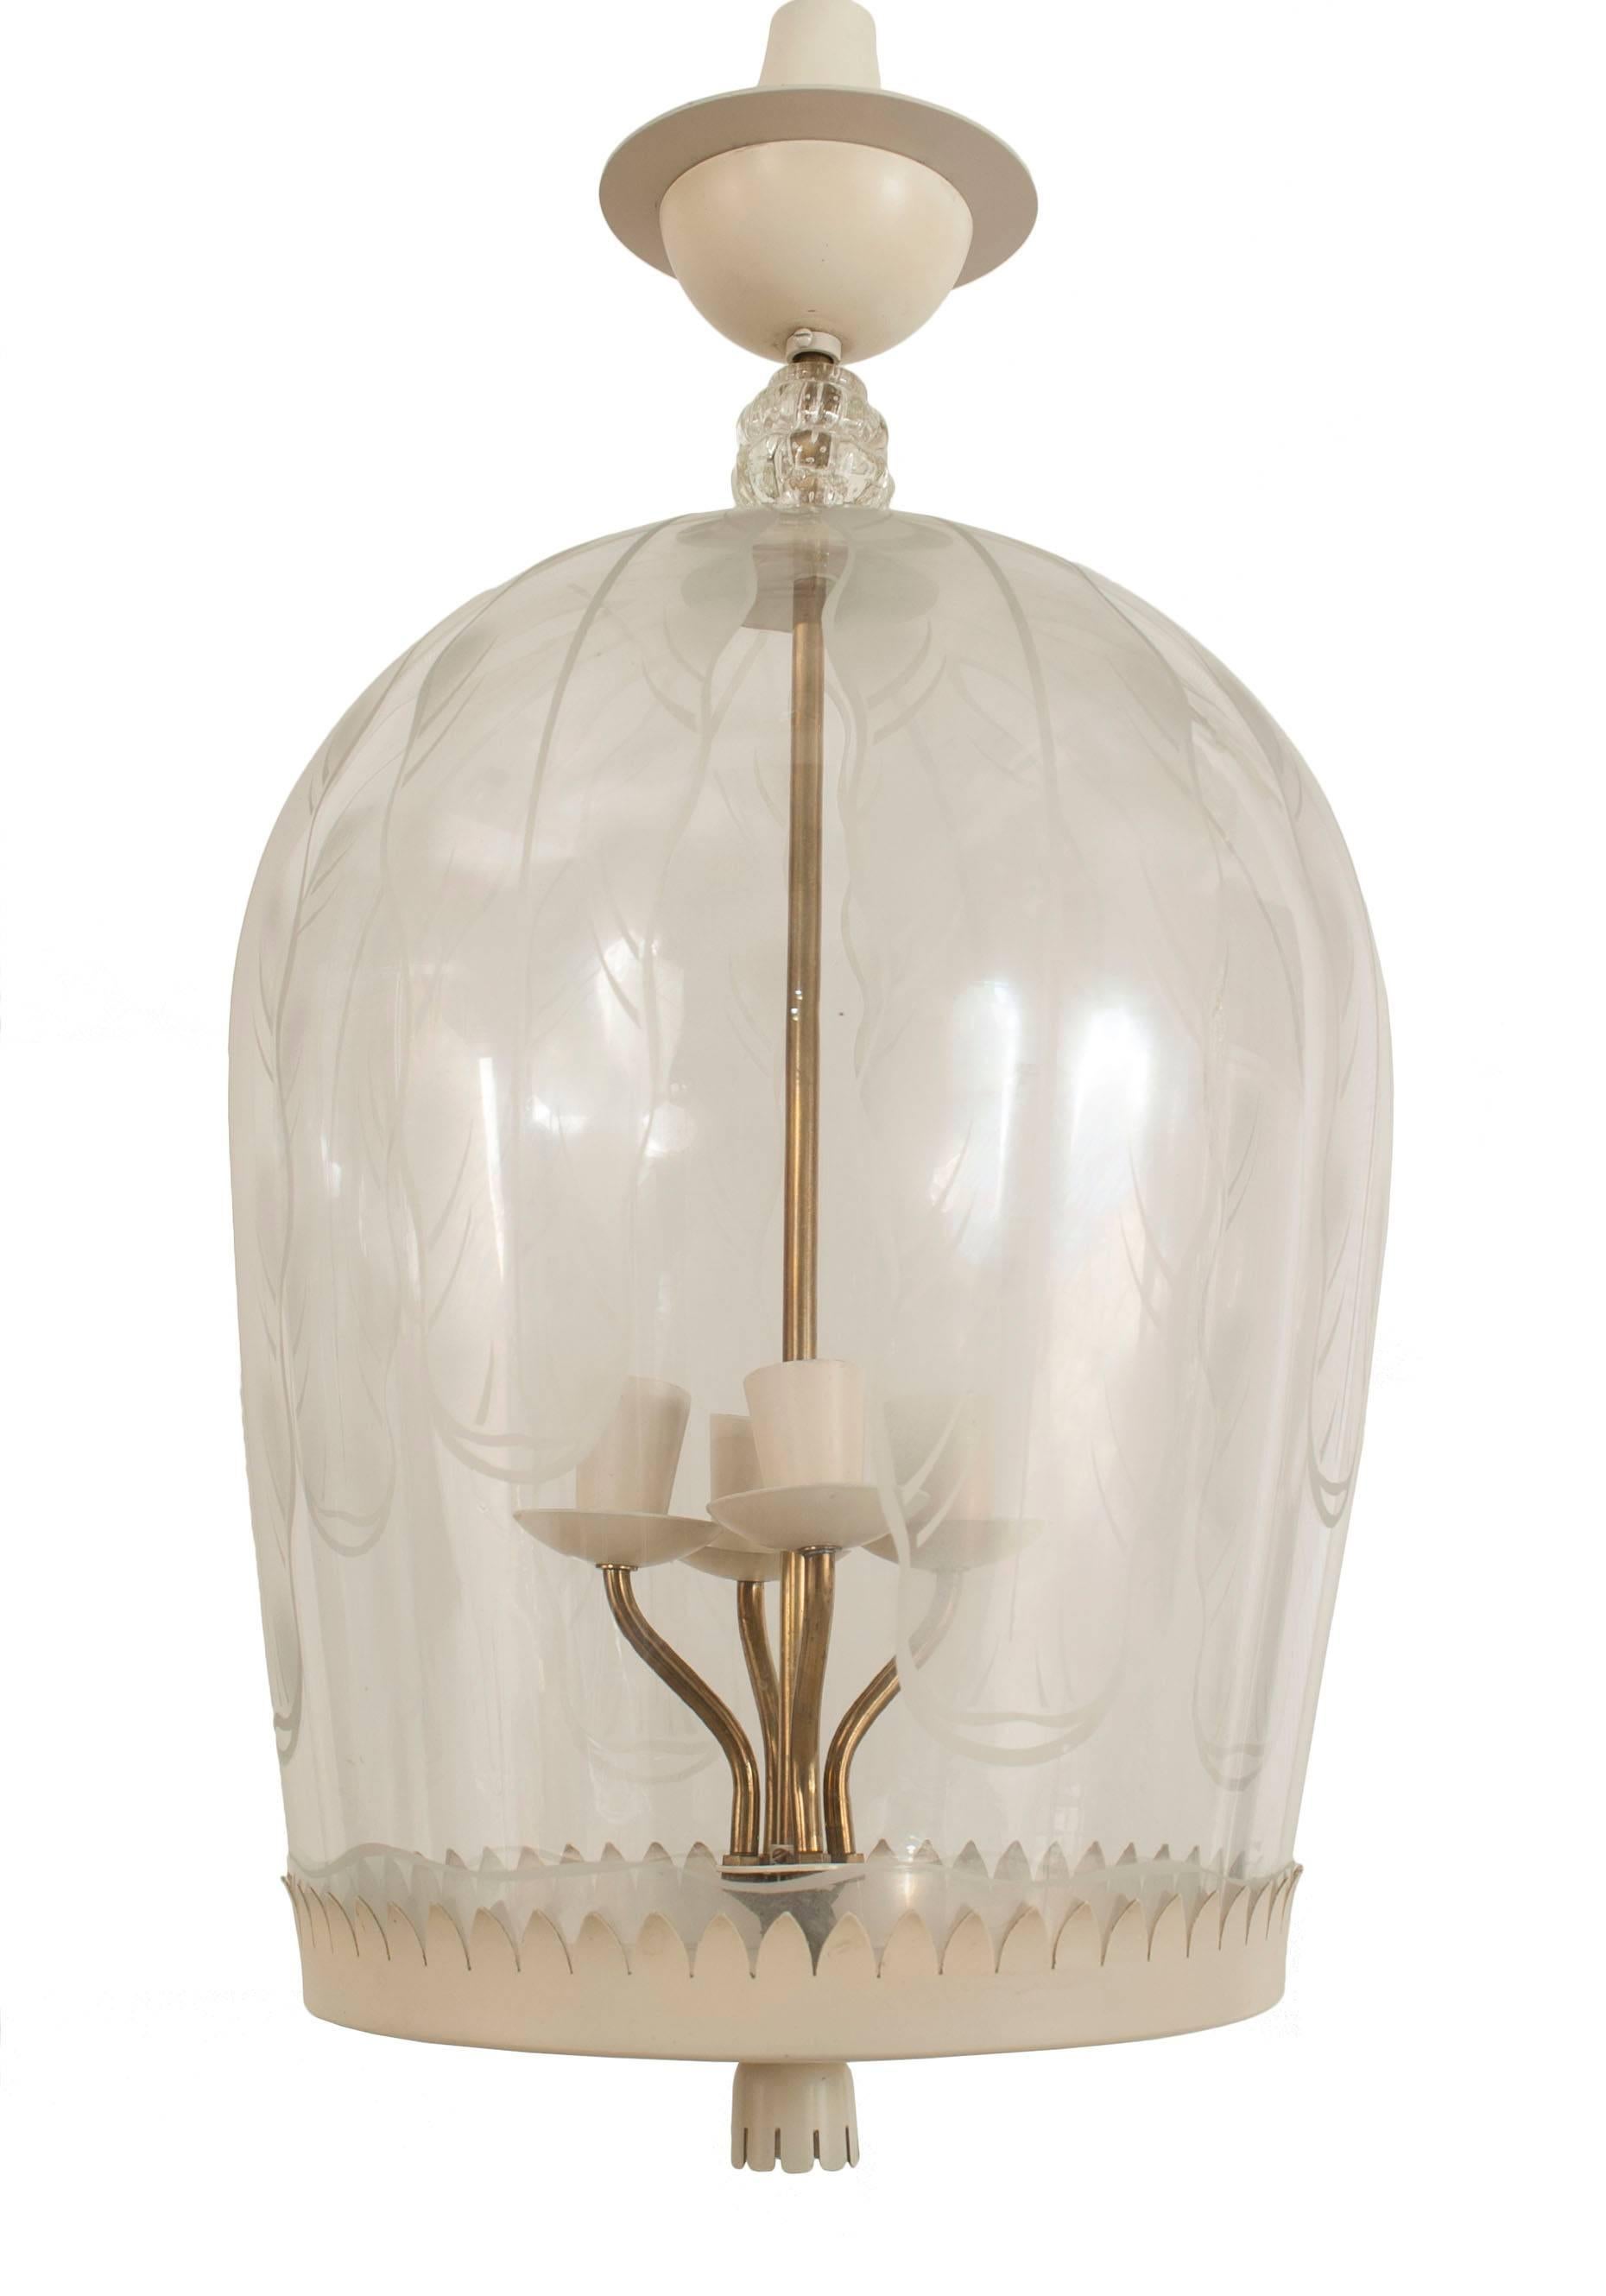 Lanterne italienne des années 1940 en forme de dôme en verre clair avec un motif gravé de feuilles et un fond peint et festonné en métal blanc avec un fleuron.
